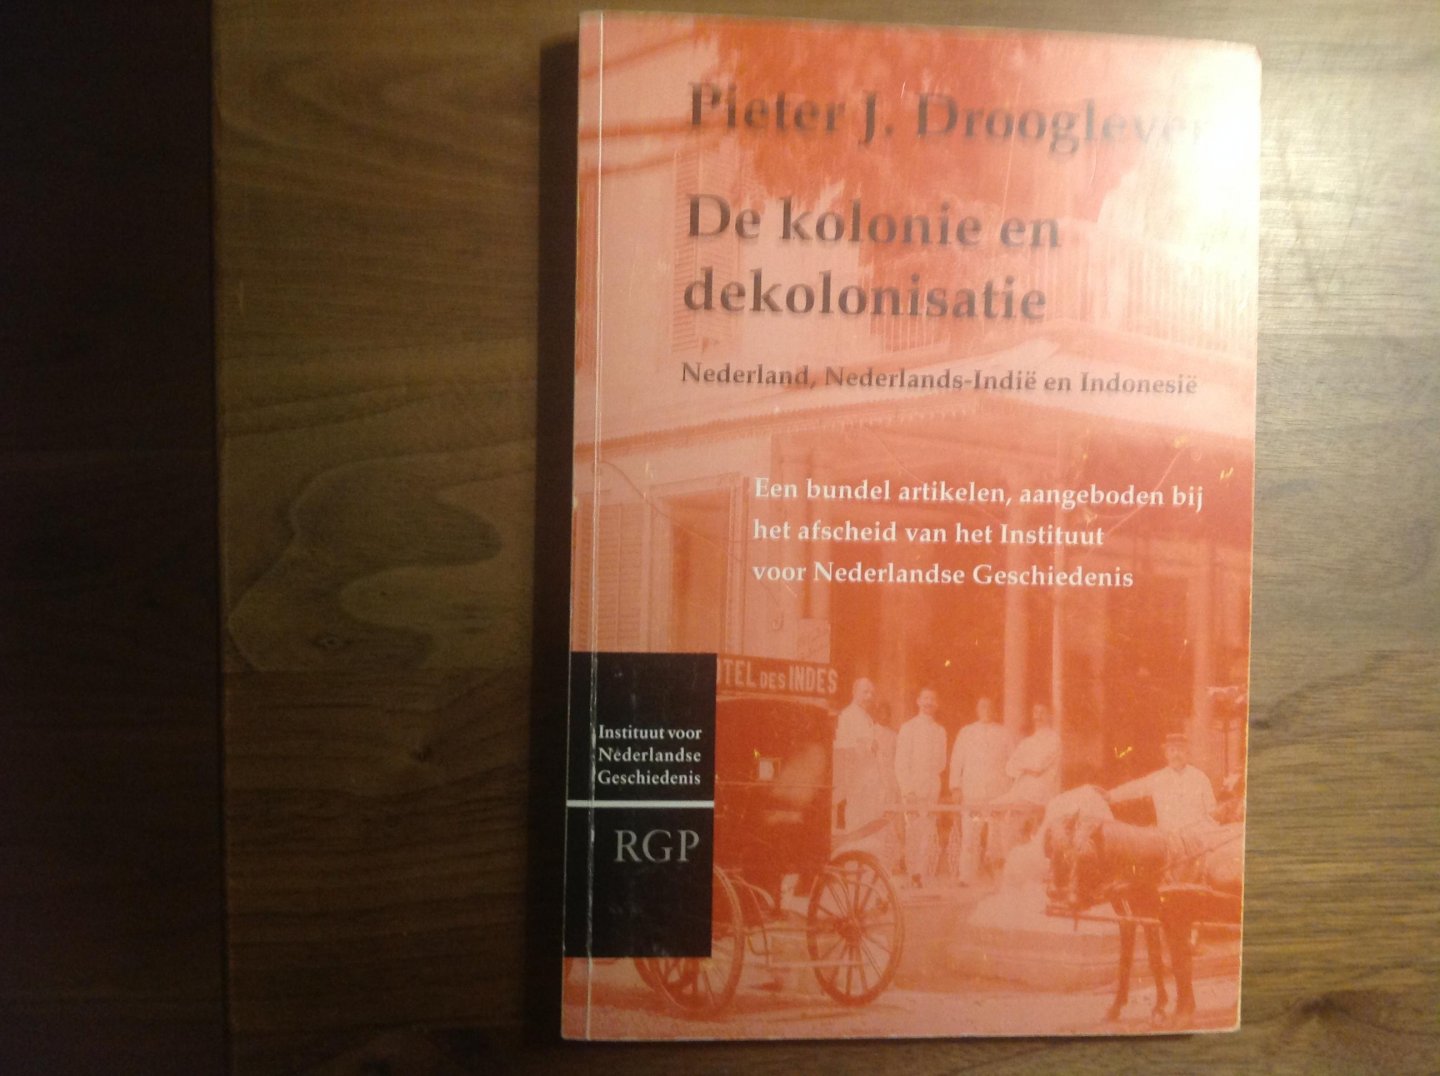 Pieter J. Drooglever - Pieter J. Drooglever. De kolonie en dekolonisatie: Nederland, Nederlands-Indië en Indonesië / druk 1